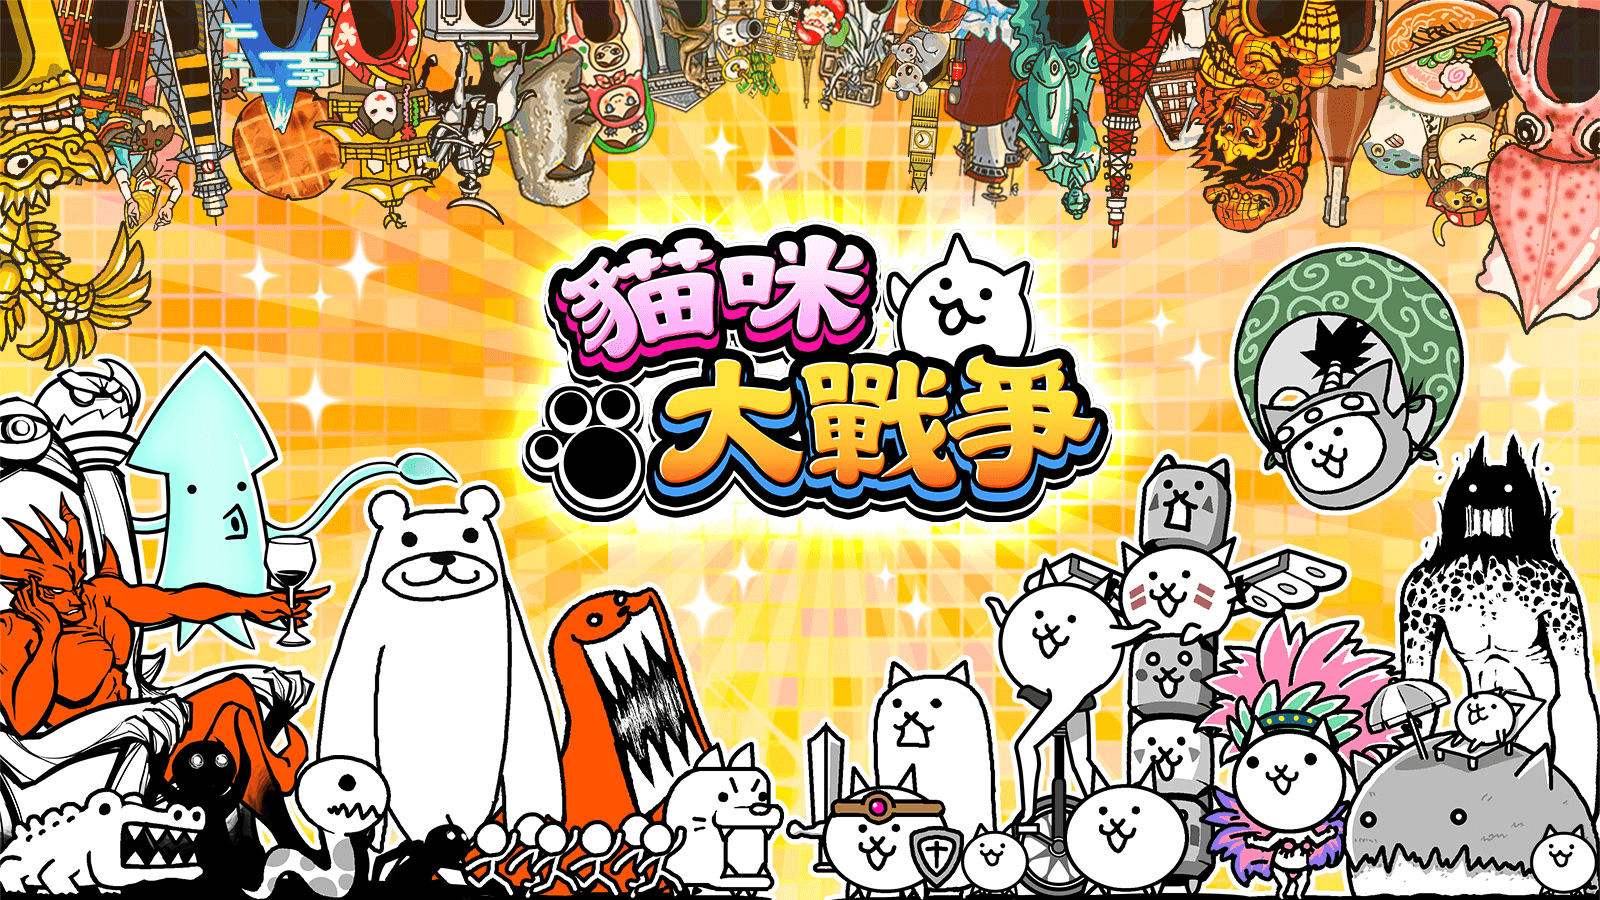 unnamed 1 - 【修改版】貓咪大戰爭 12.5.0 無限貓罐頭、快速召喚貓咪